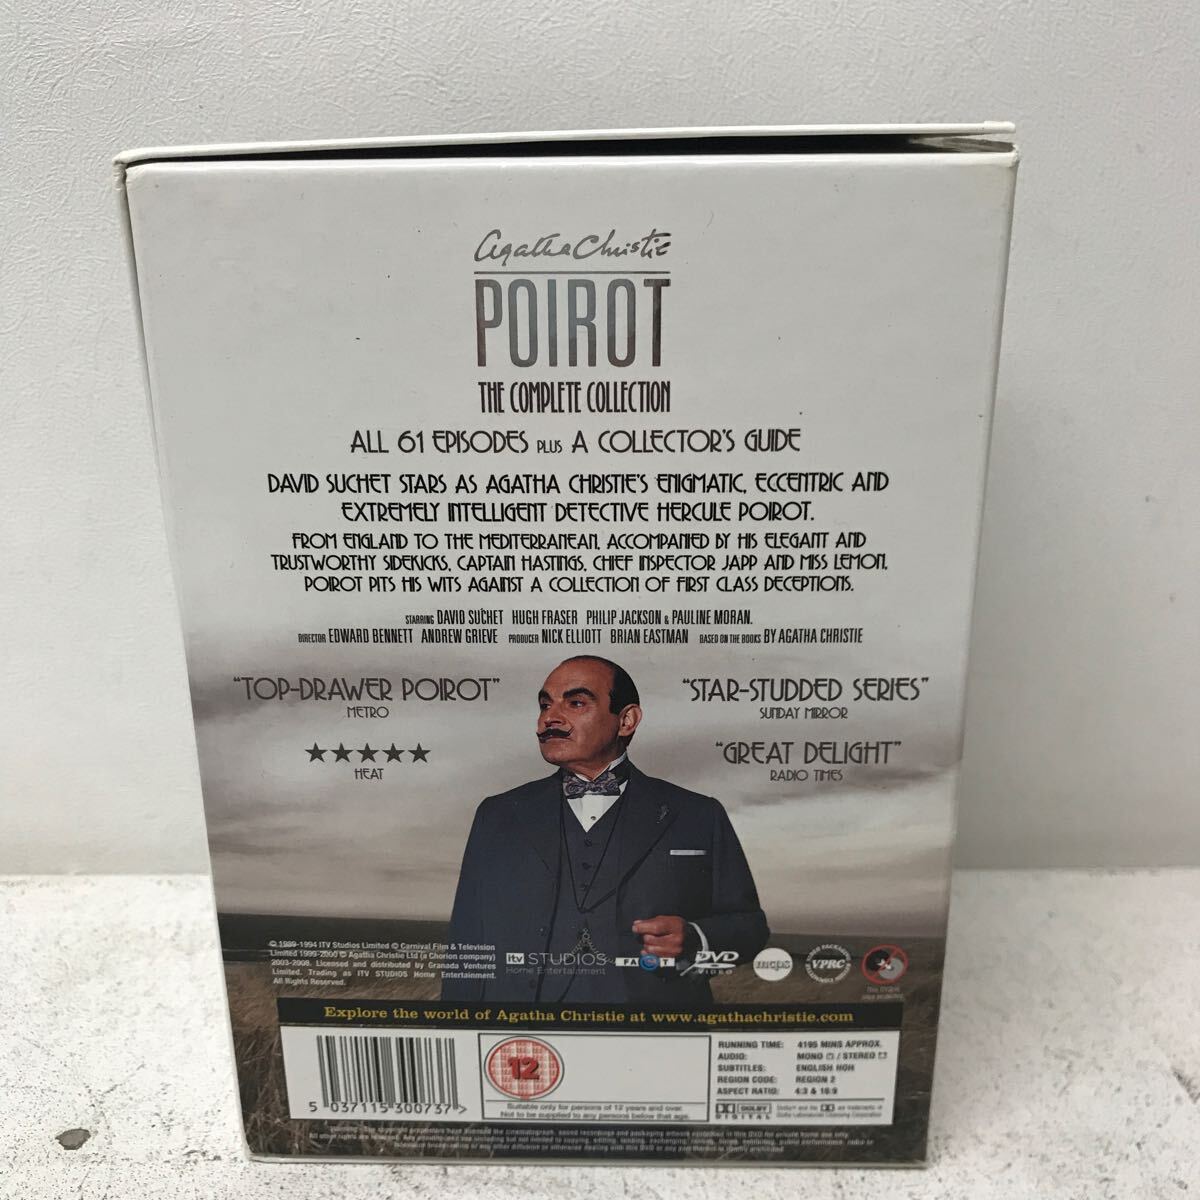 I0322E3 名探偵ポアロ Poirot コンプリートコレクション DVDBOX 61エピソード 輸入盤 国内再生不可 海外ドラマ THE COMPLETE COLLECTION_画像2